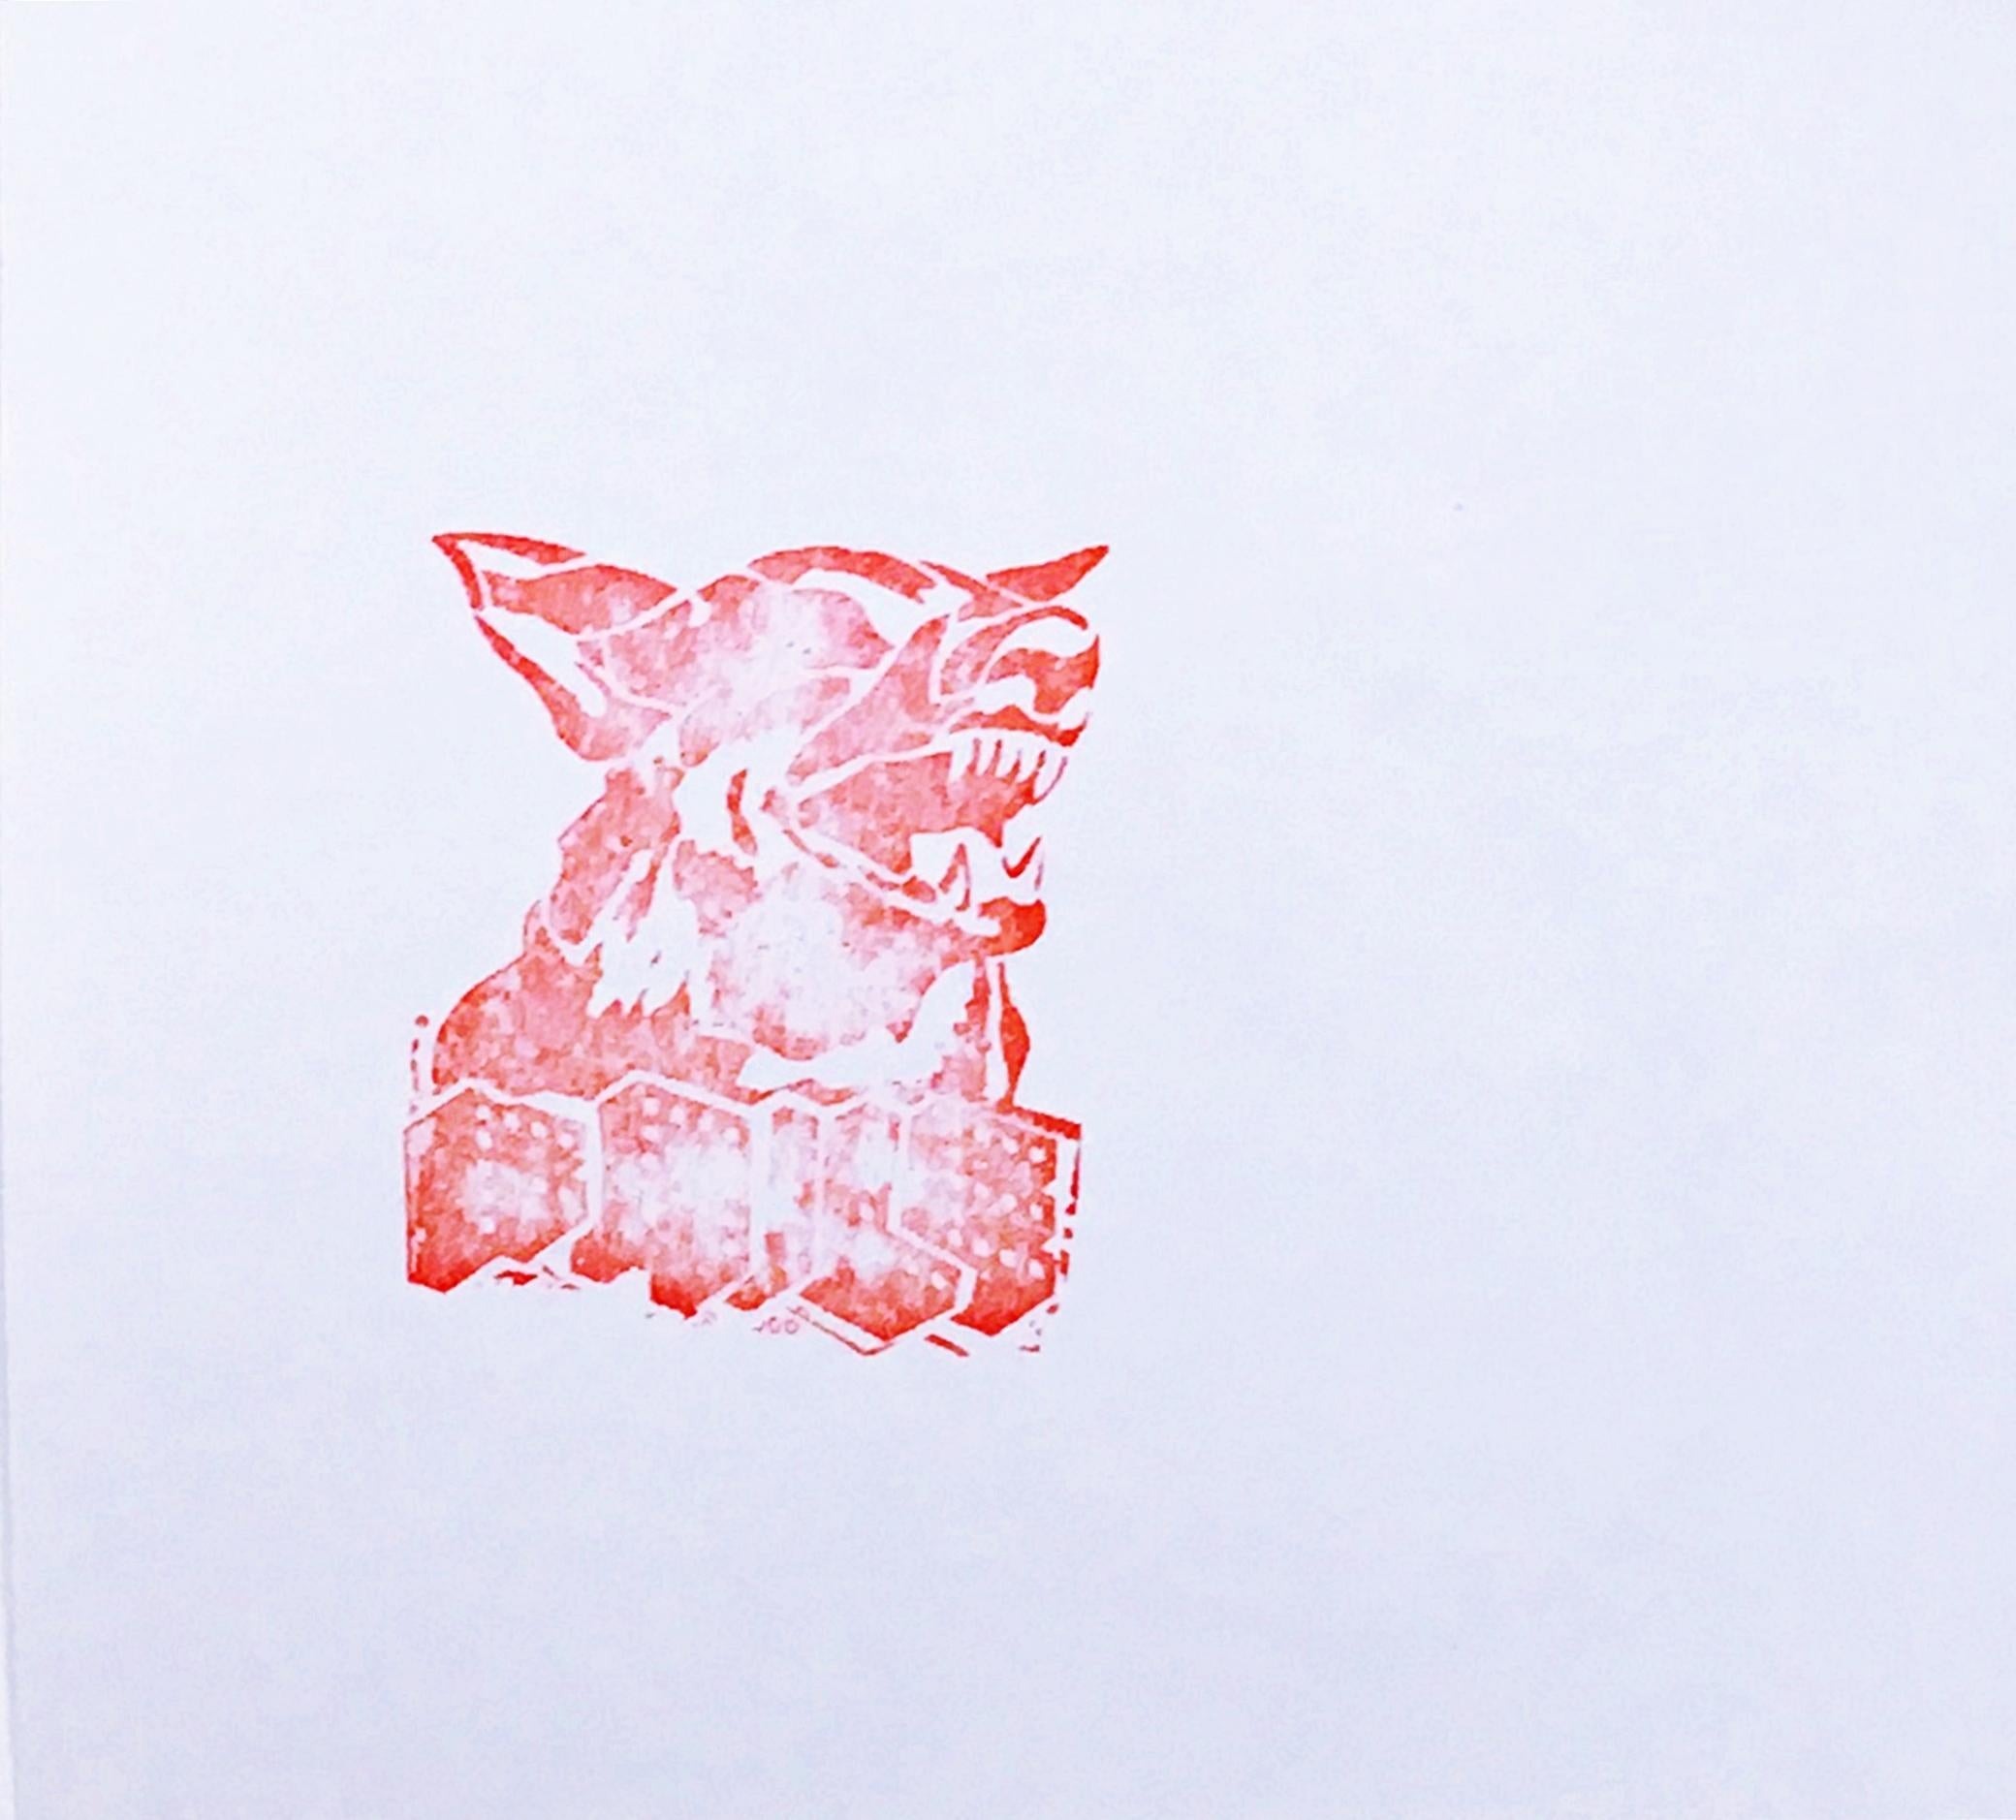 Le chien rouge (impression à l'édition limitée avec feuille d'or) par de célèbres artistes pop art de la rue  - Art urbain Print par Faile